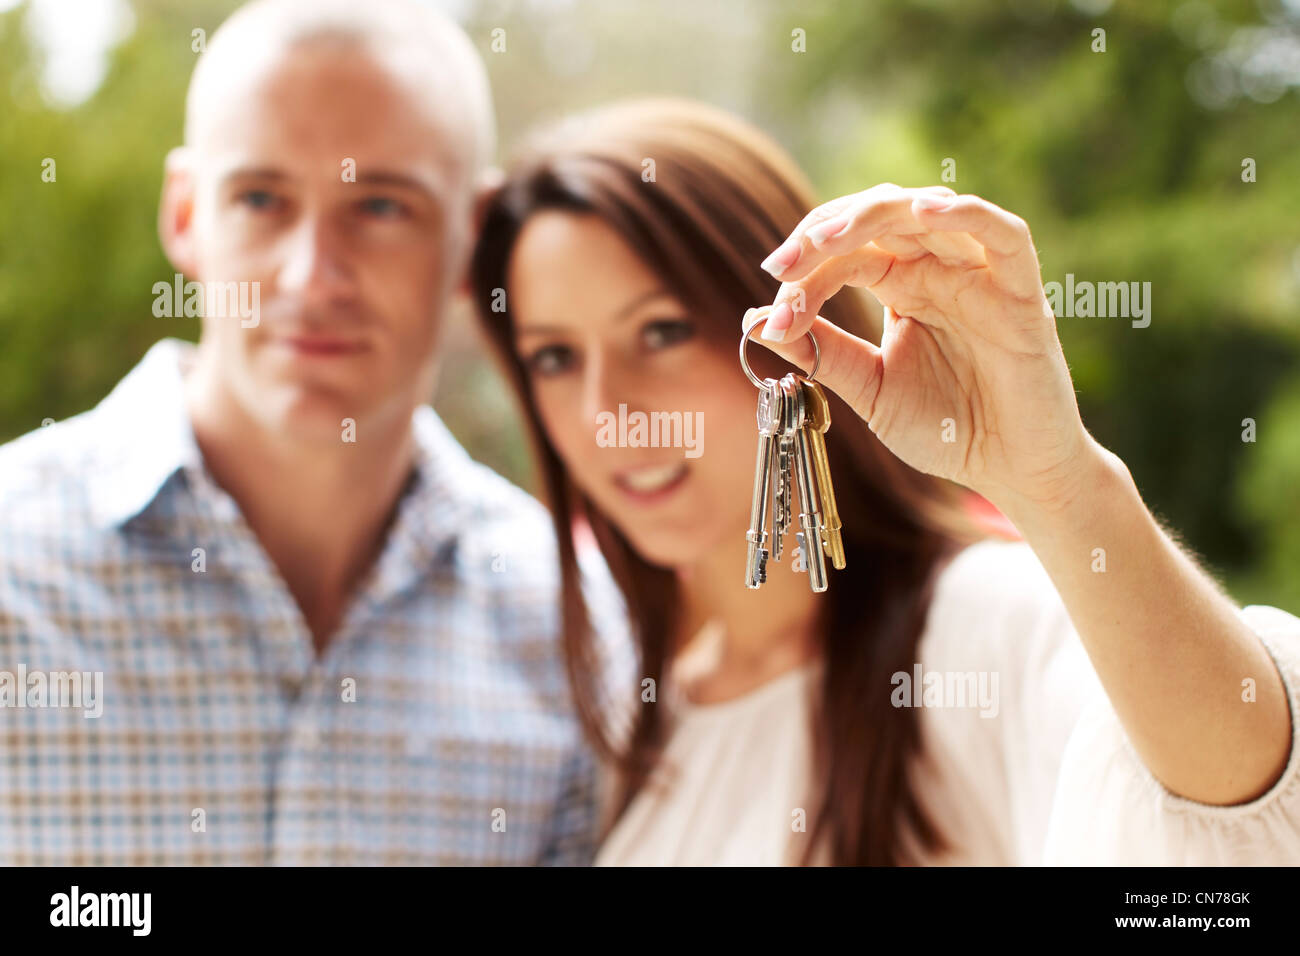 Couple holding keys Stock Photo